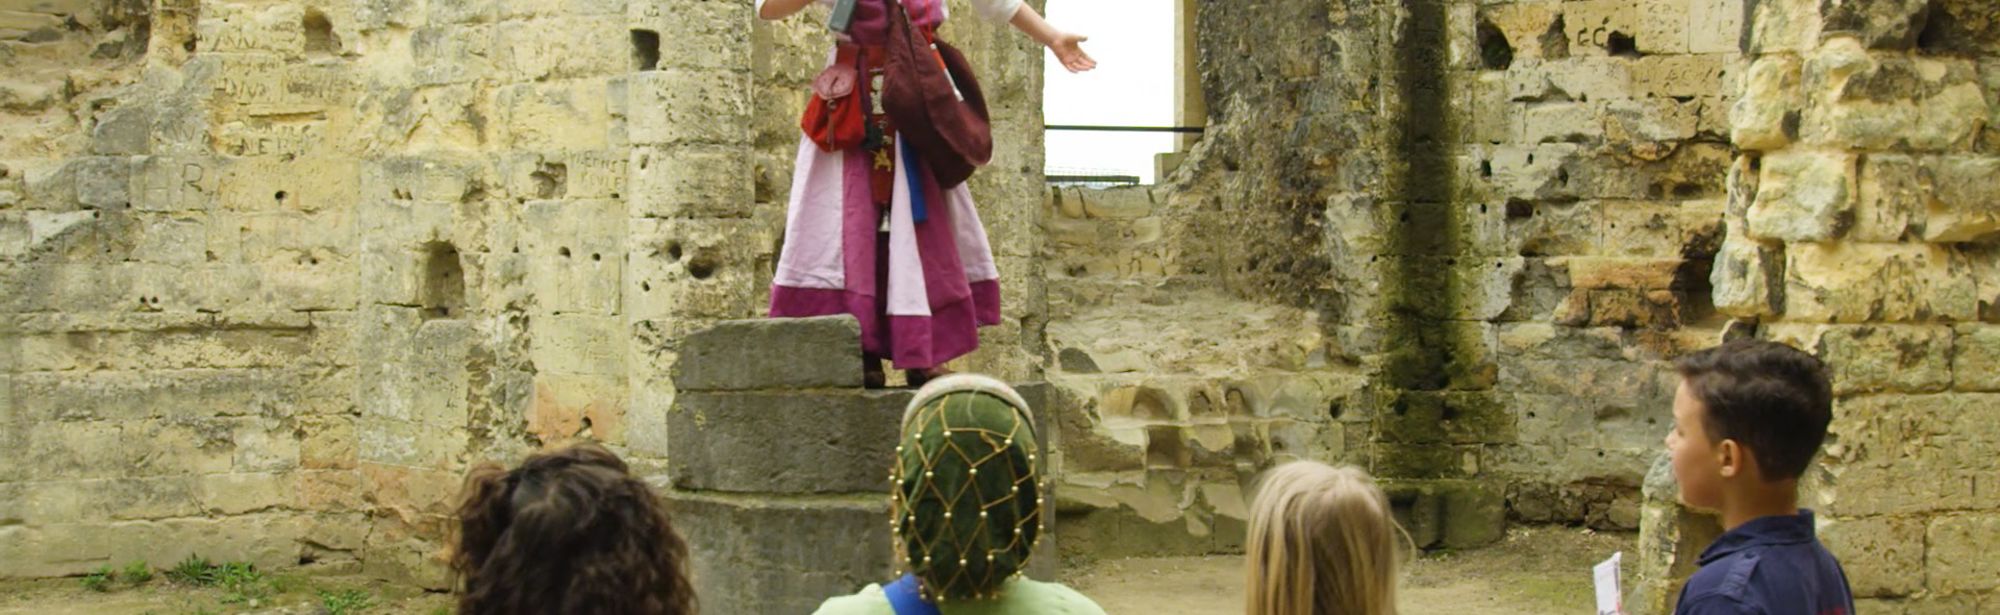 Verkleed kind spreekt haar vriendjes toe op een steenblok